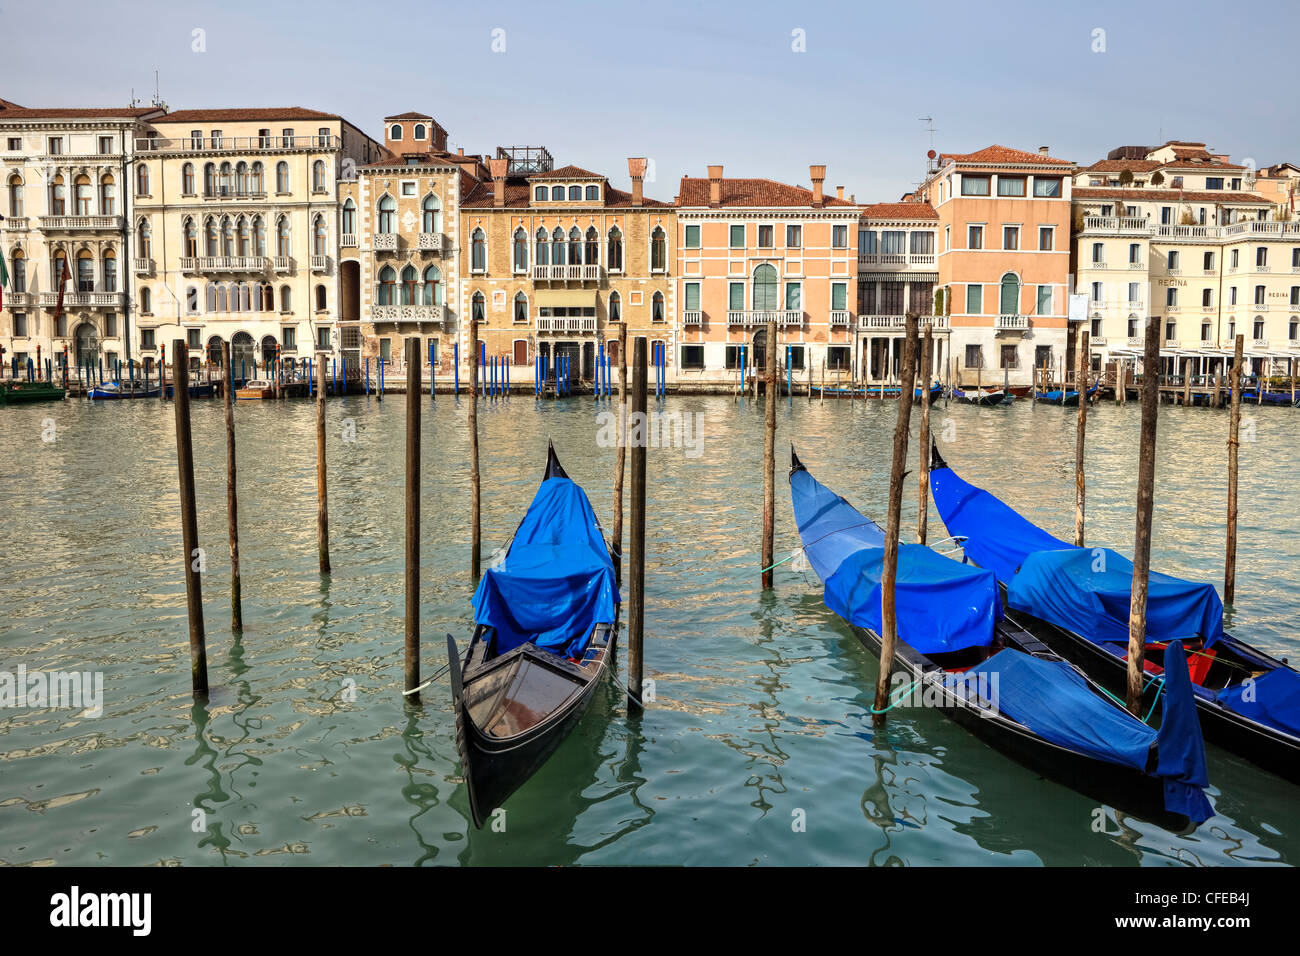 Gondoles, palazzi, Grand Canal, San Marco, Venise, Vénétie, Italie Banque D'Images